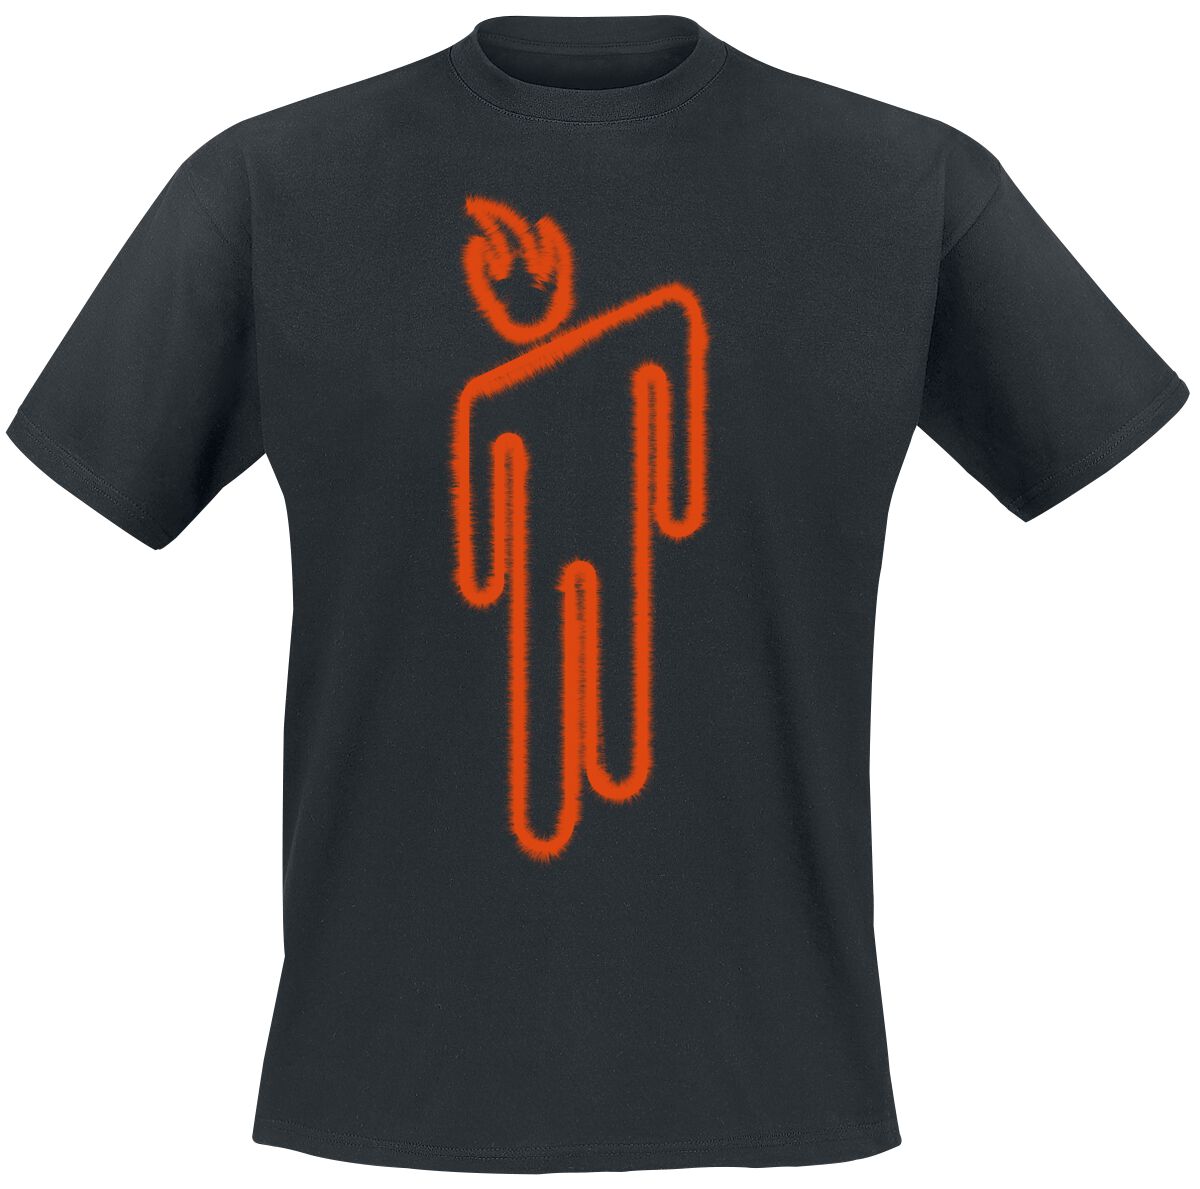 Billie Eilish T-Shirt - Fire Blohsh - S bis M - für Männer - Größe M - schwarz  - Lizenziertes Merchandise!